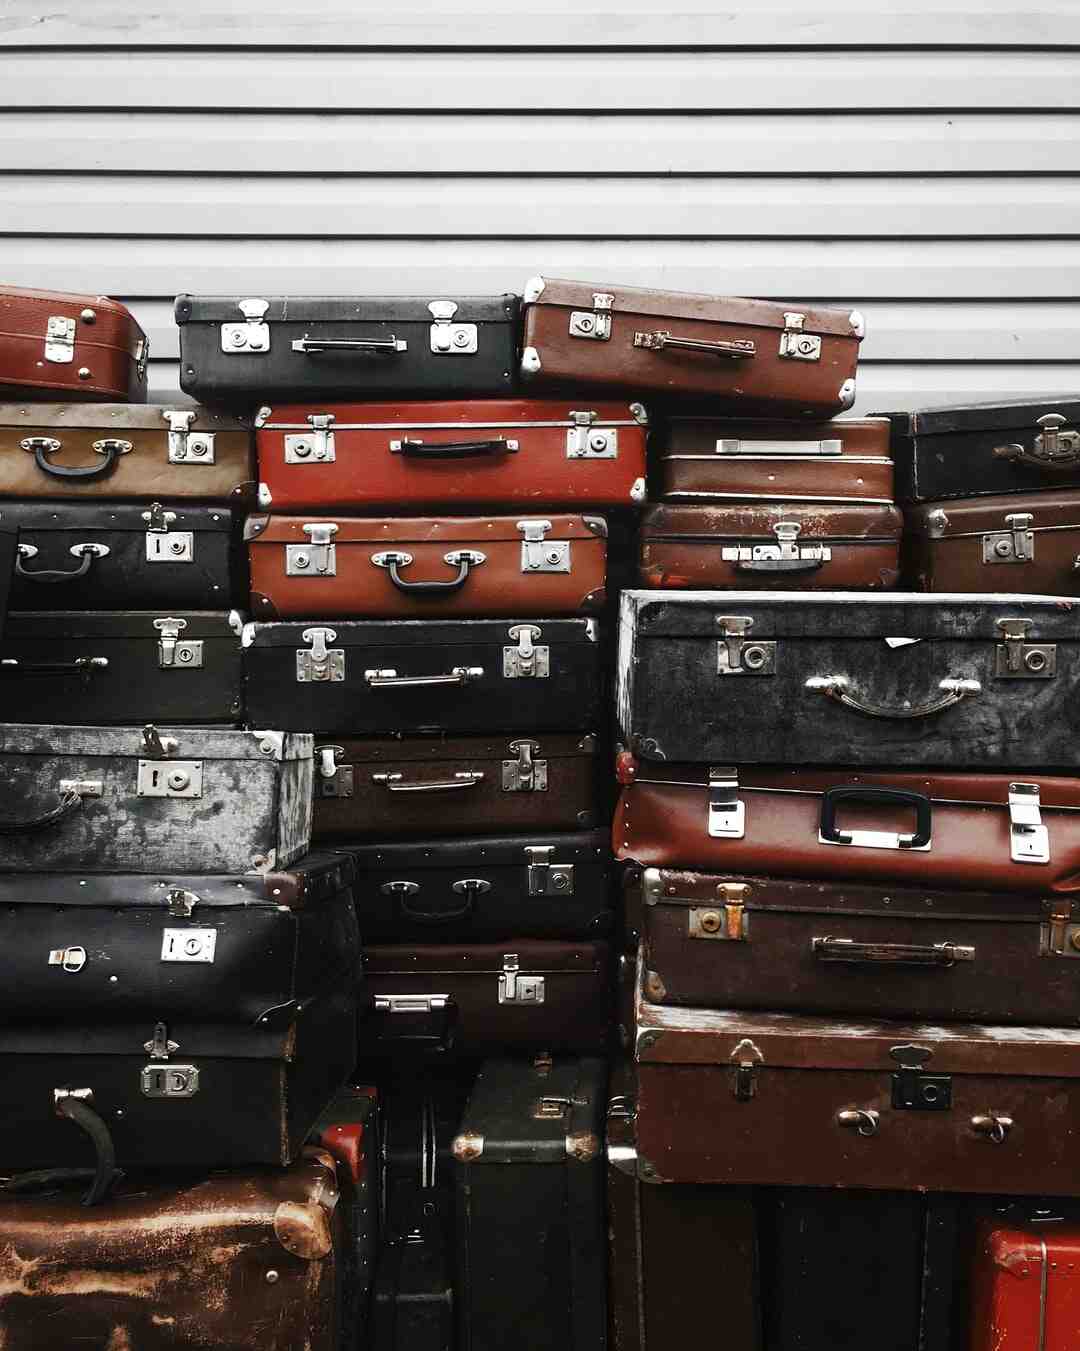 Comment bien faire sa valise pour 1 semaine ?